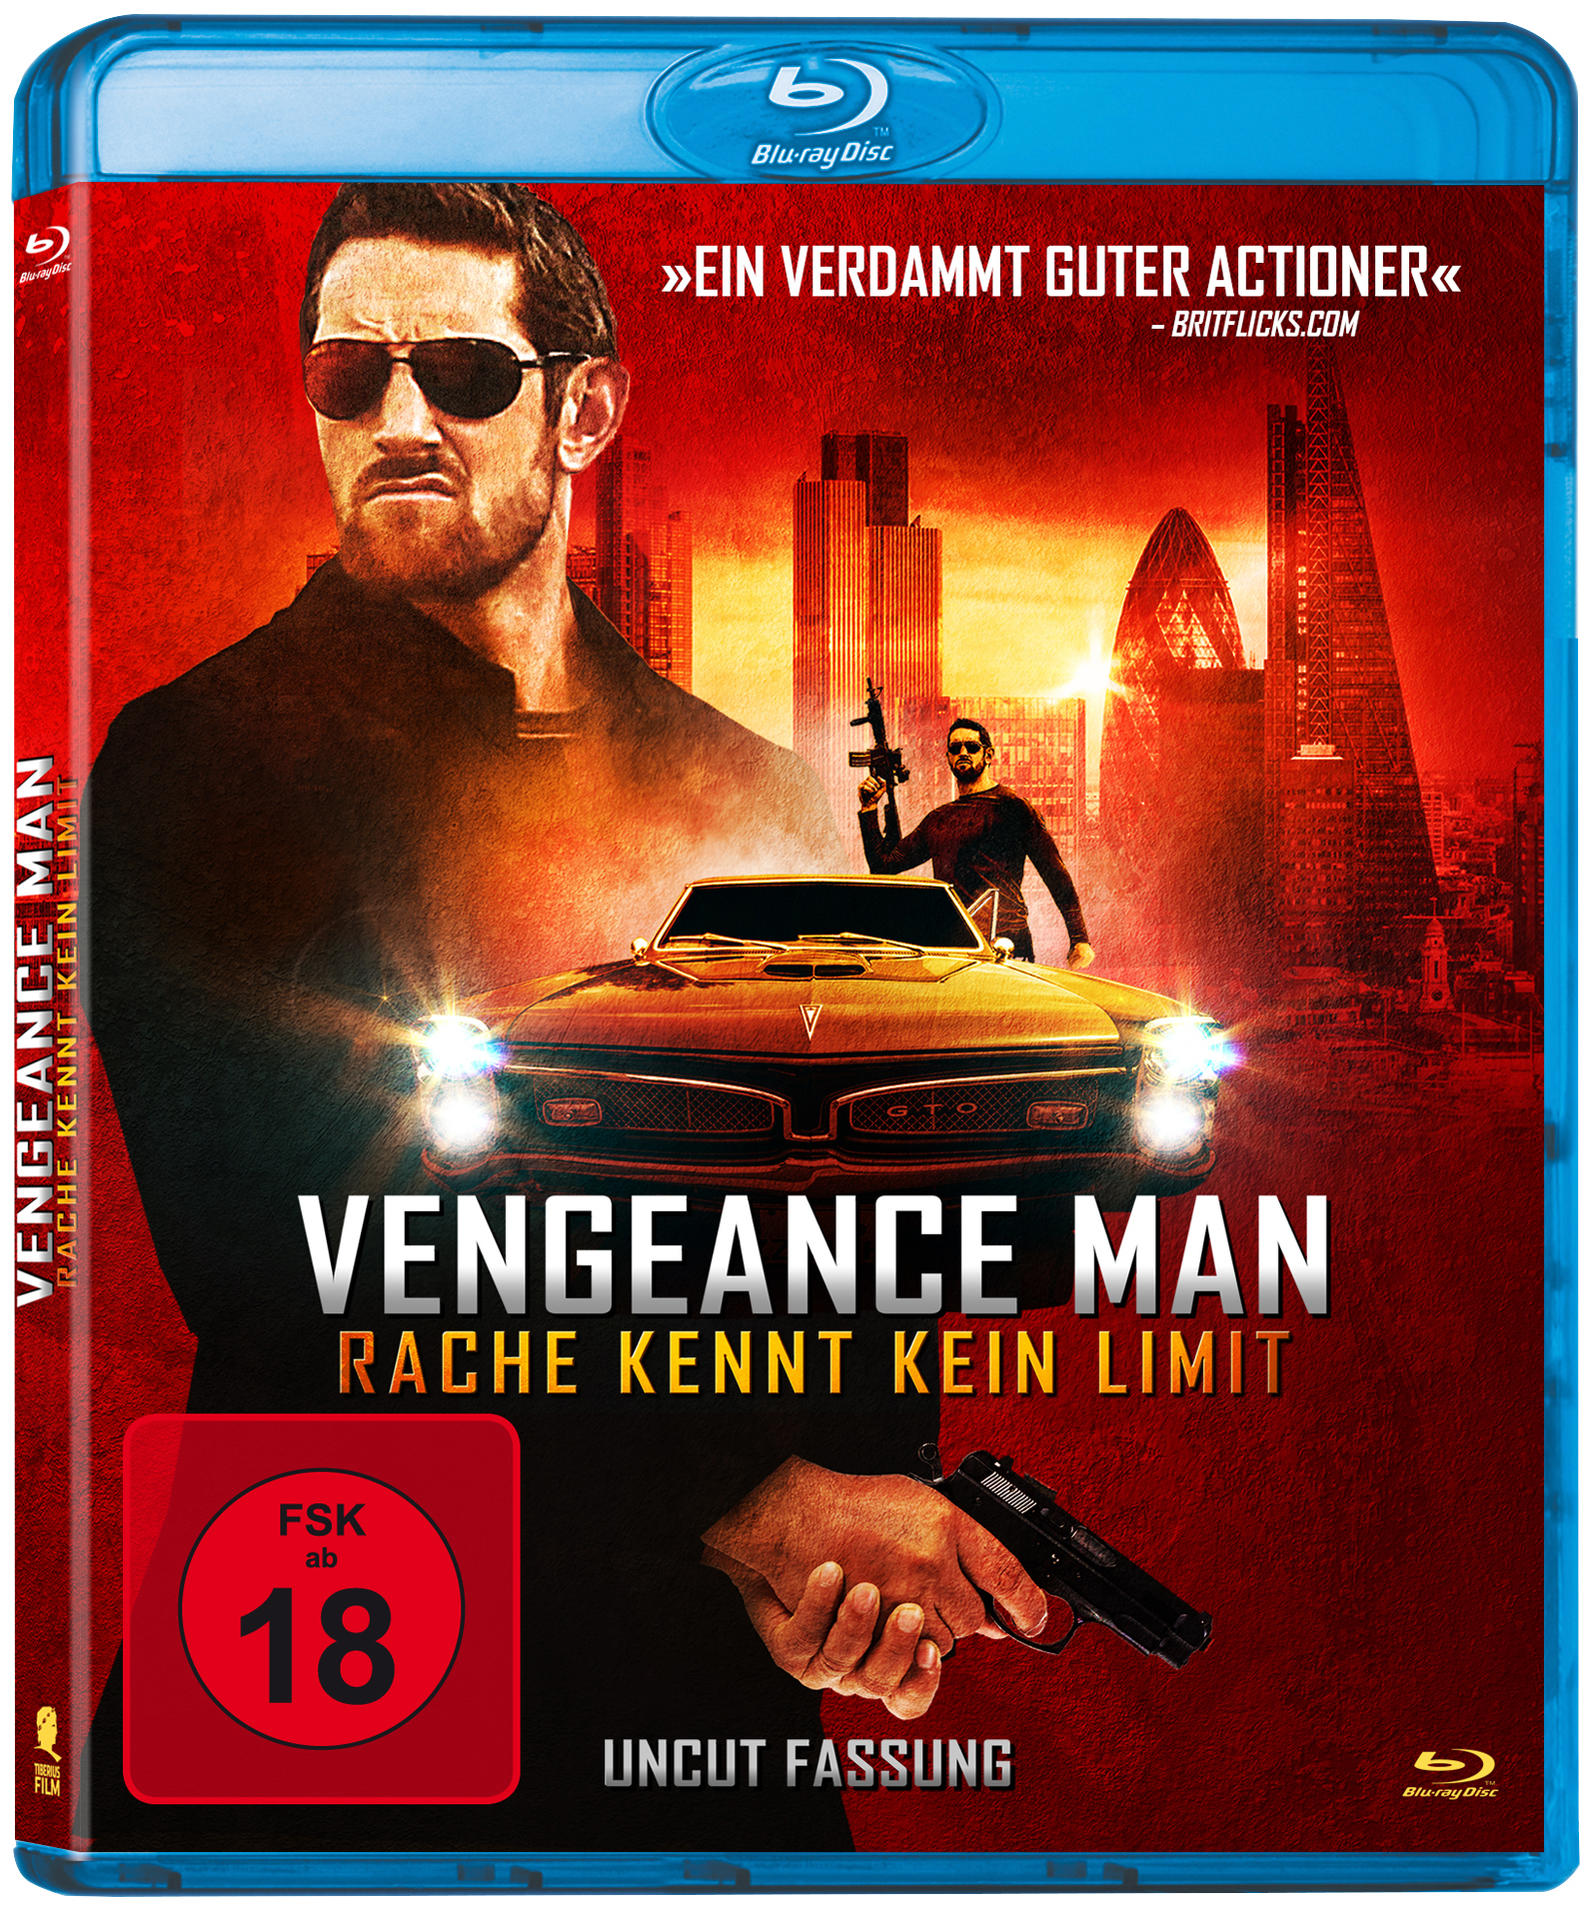 Vengeance kennt Man Blu-ray - Limit Rache kein